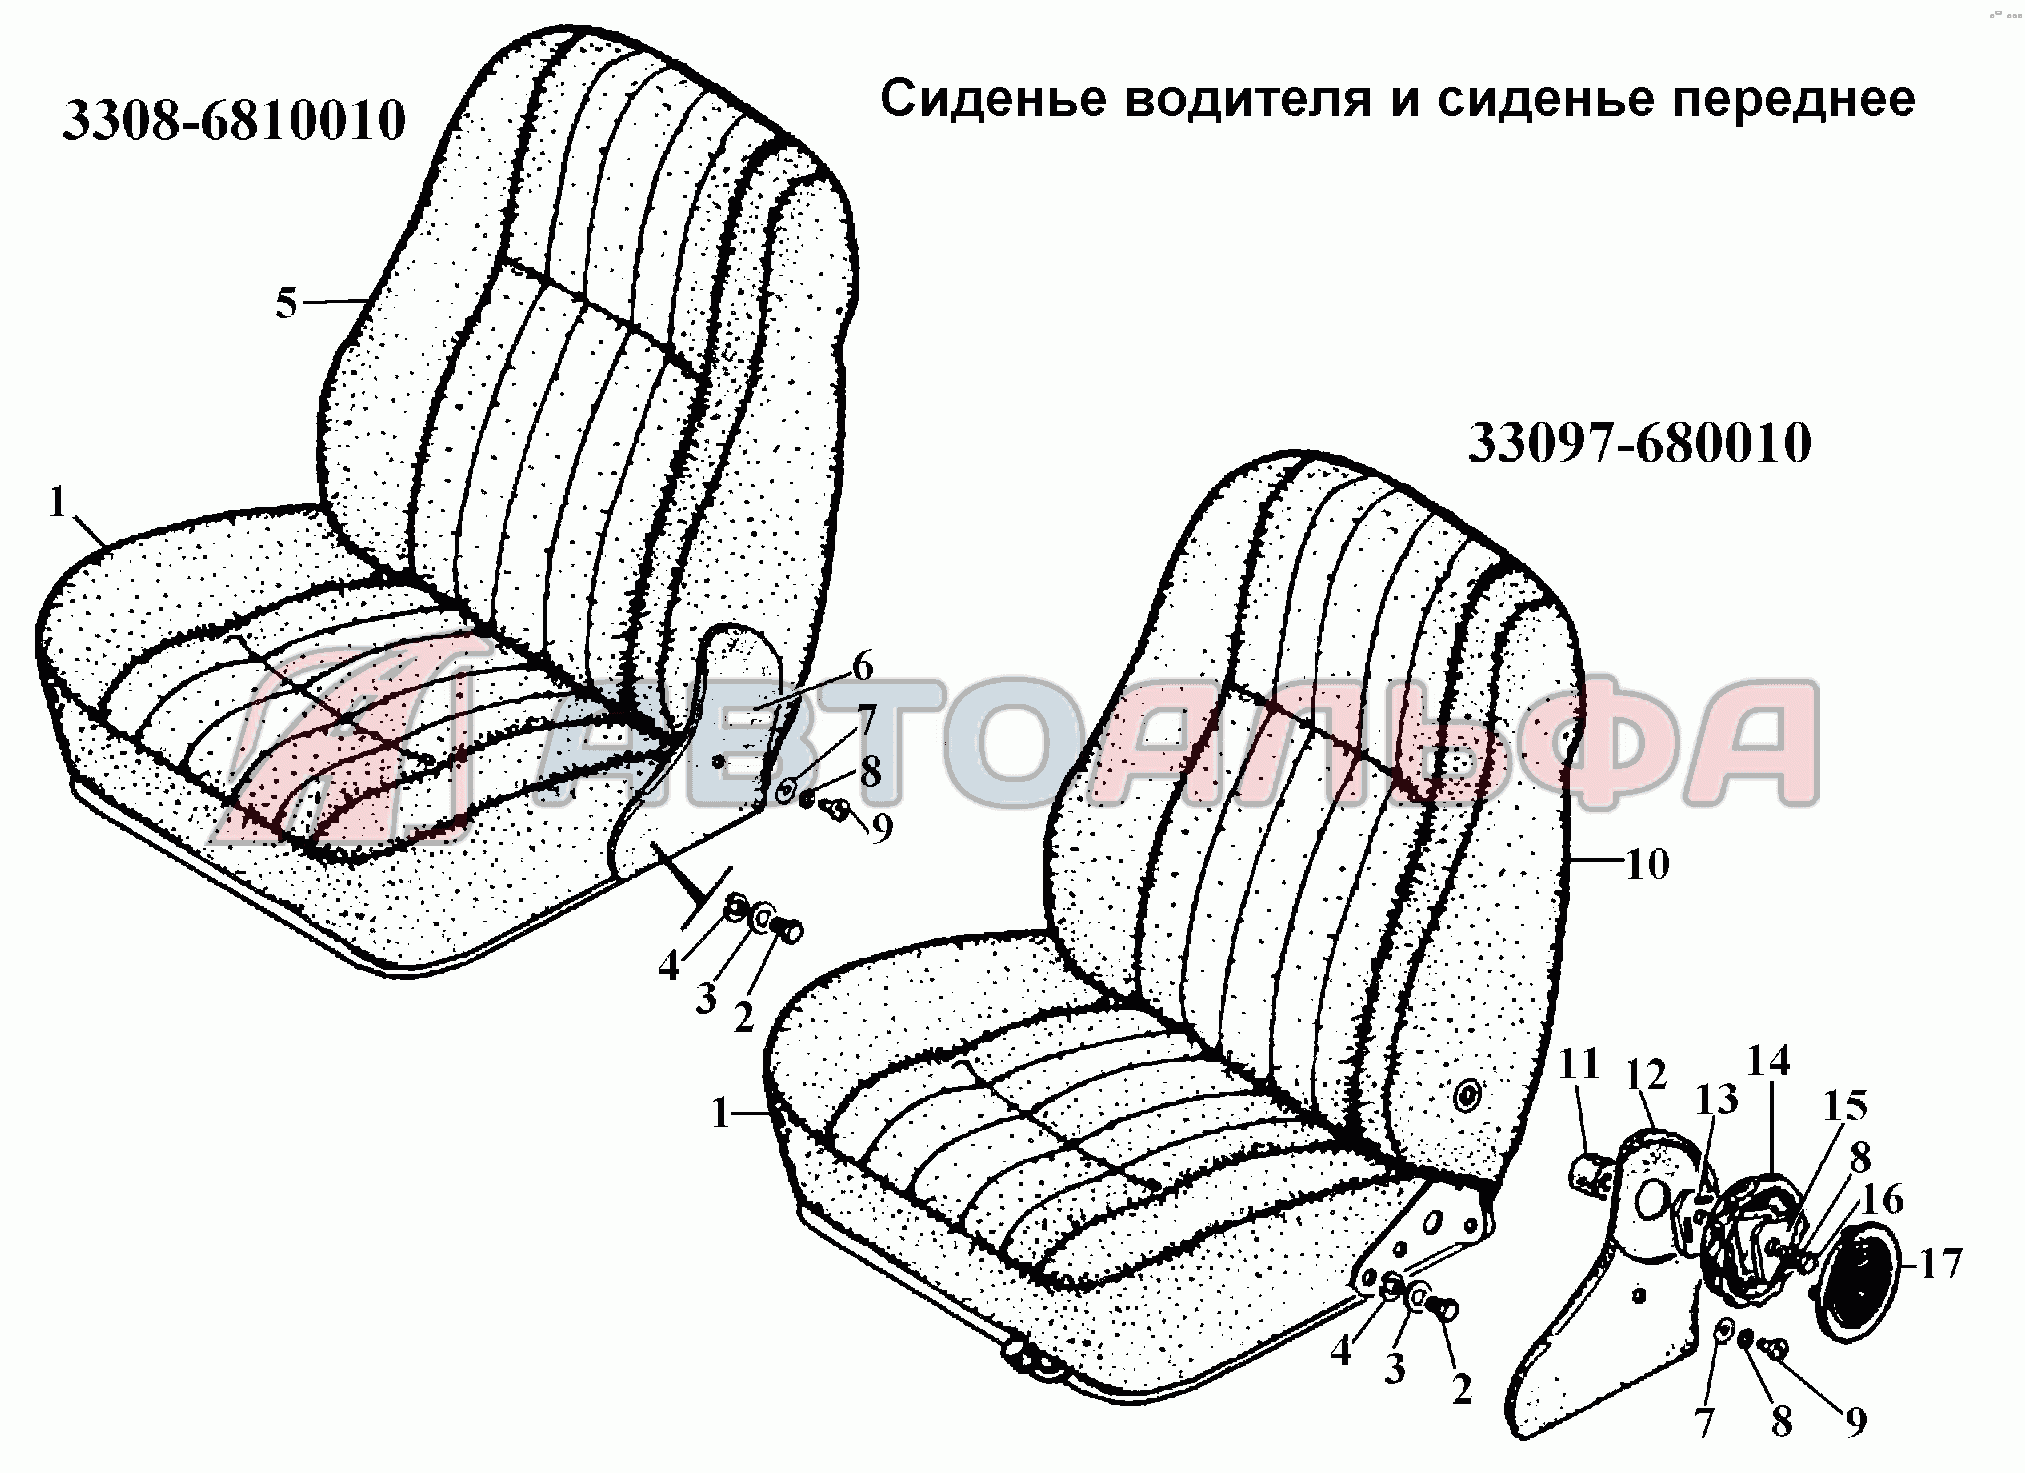 Сиденье водителя и сиденье переднее ГАЗ 3308, каталог 2002 г.